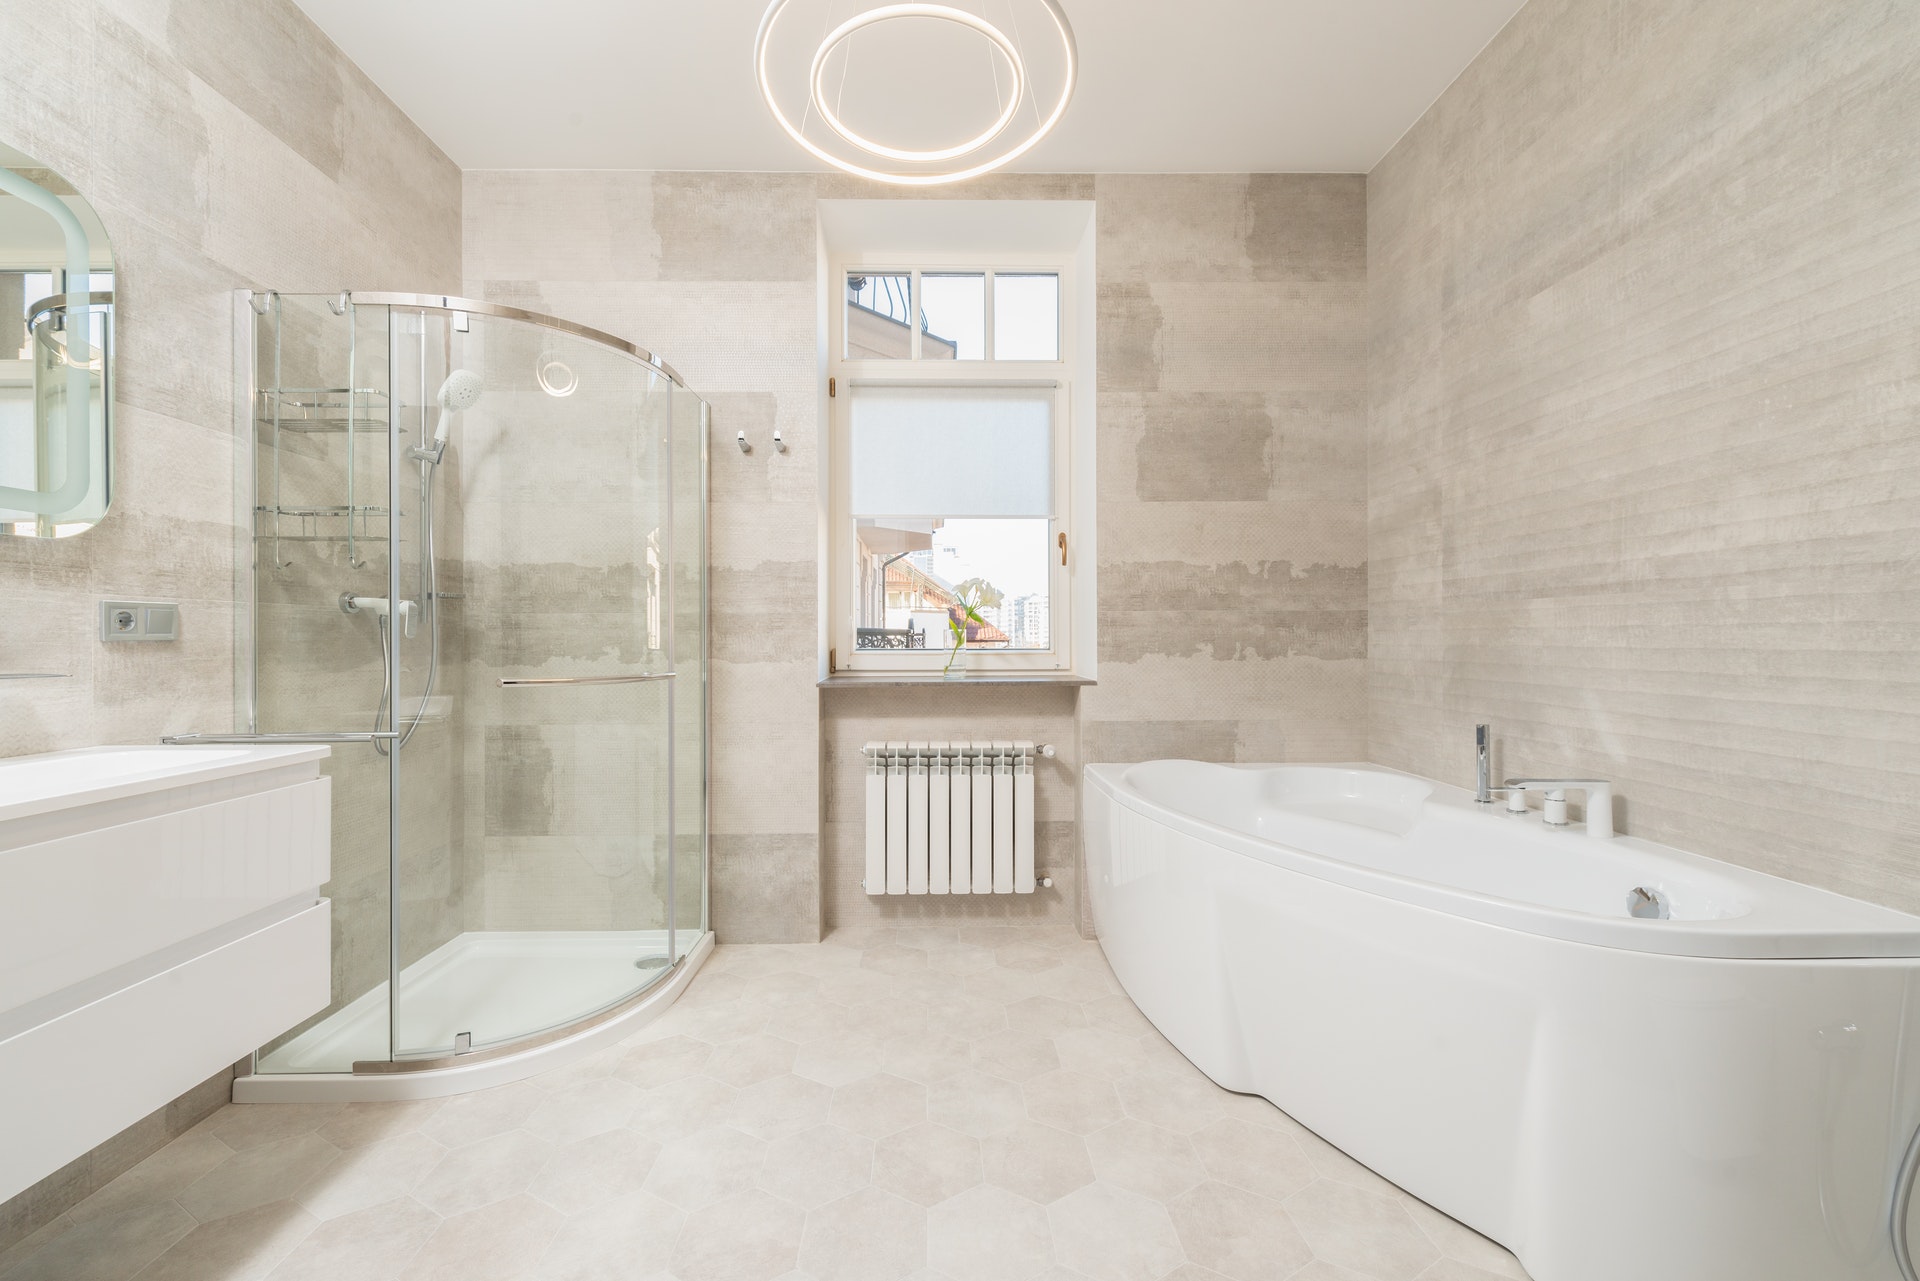 Với xu hướng gạch ốp và lát phòng tắm đẹp 2024 - Viglacera Platinum, bạn sẽ tìm thấy những sản phẩm tốt nhất và hiện đại nhất để tạo nên không gian tắm đáng mơ ước. Điều đó chắc chắn sẽ mang đến cho bạn sự hài lòng và thích thú khi sử dụng các sản phẩm của Viglacera Platinum.